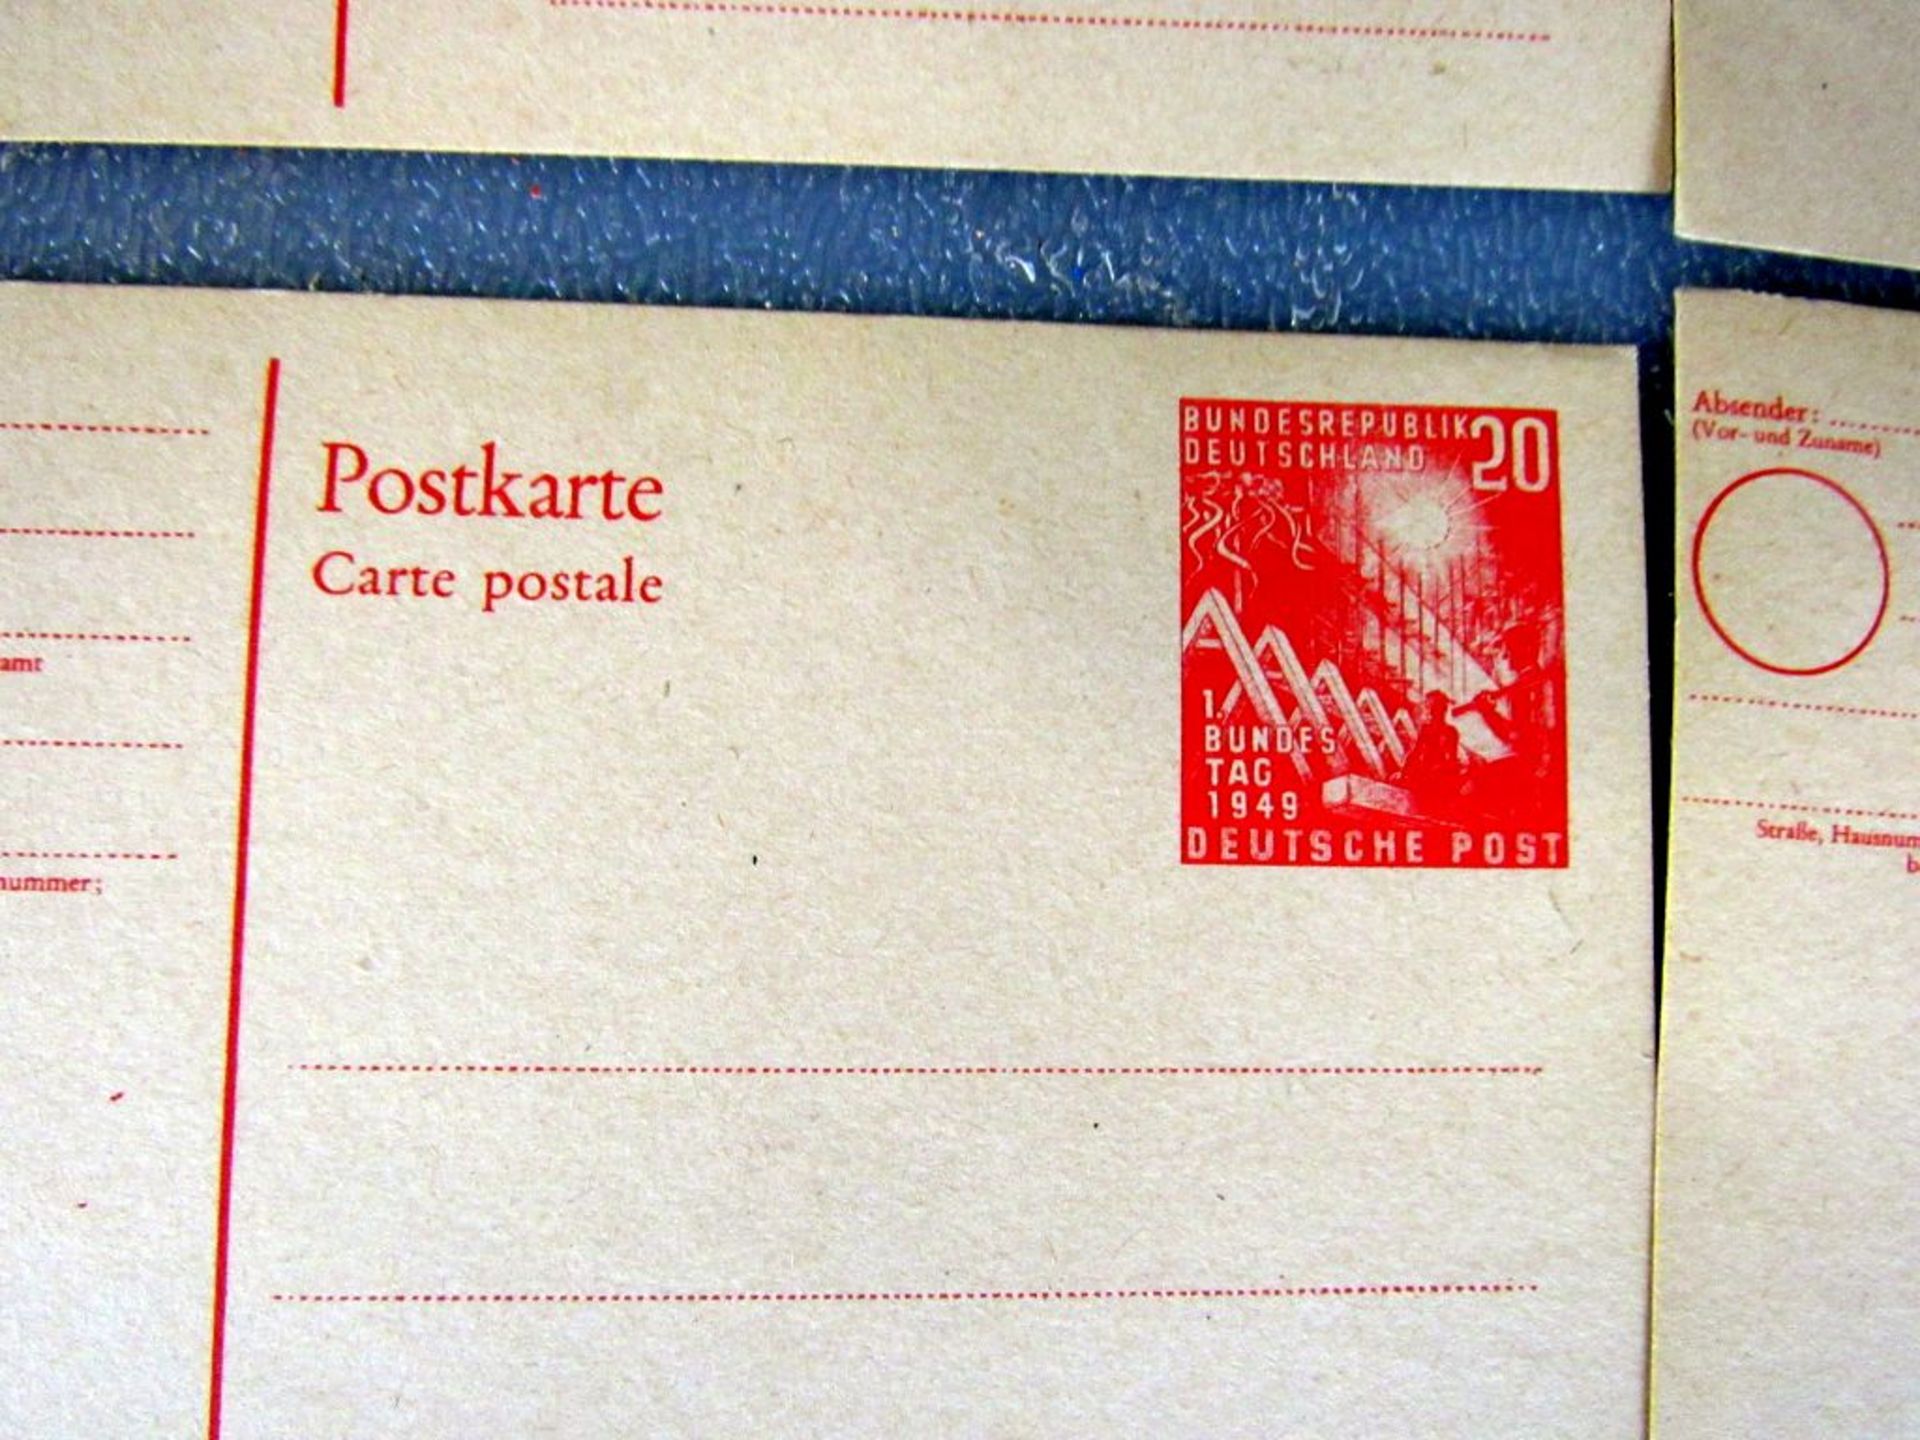 10 Postkarten deutsche Post 20 Pfennig - Image 3 of 4